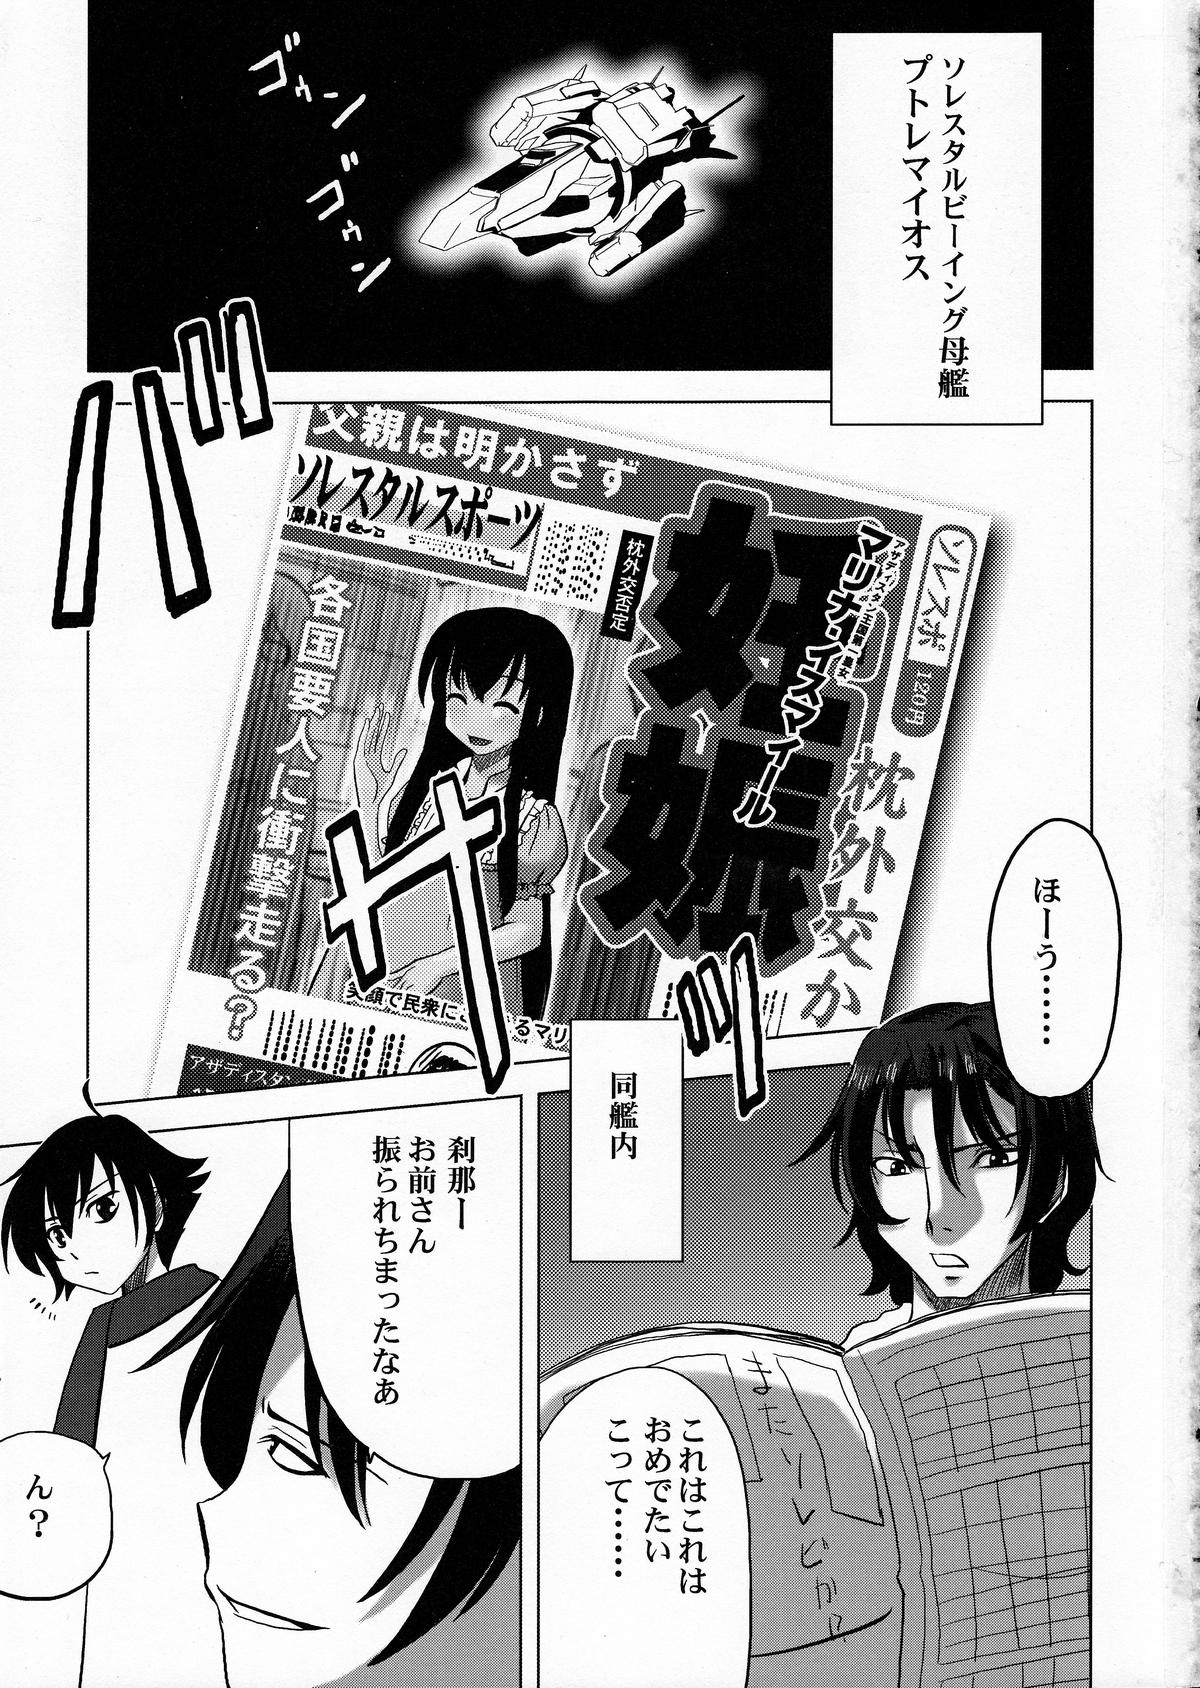 Amateurs Gone Maguro Kingdom 2009 - Gundam 00 Lips - Page 2